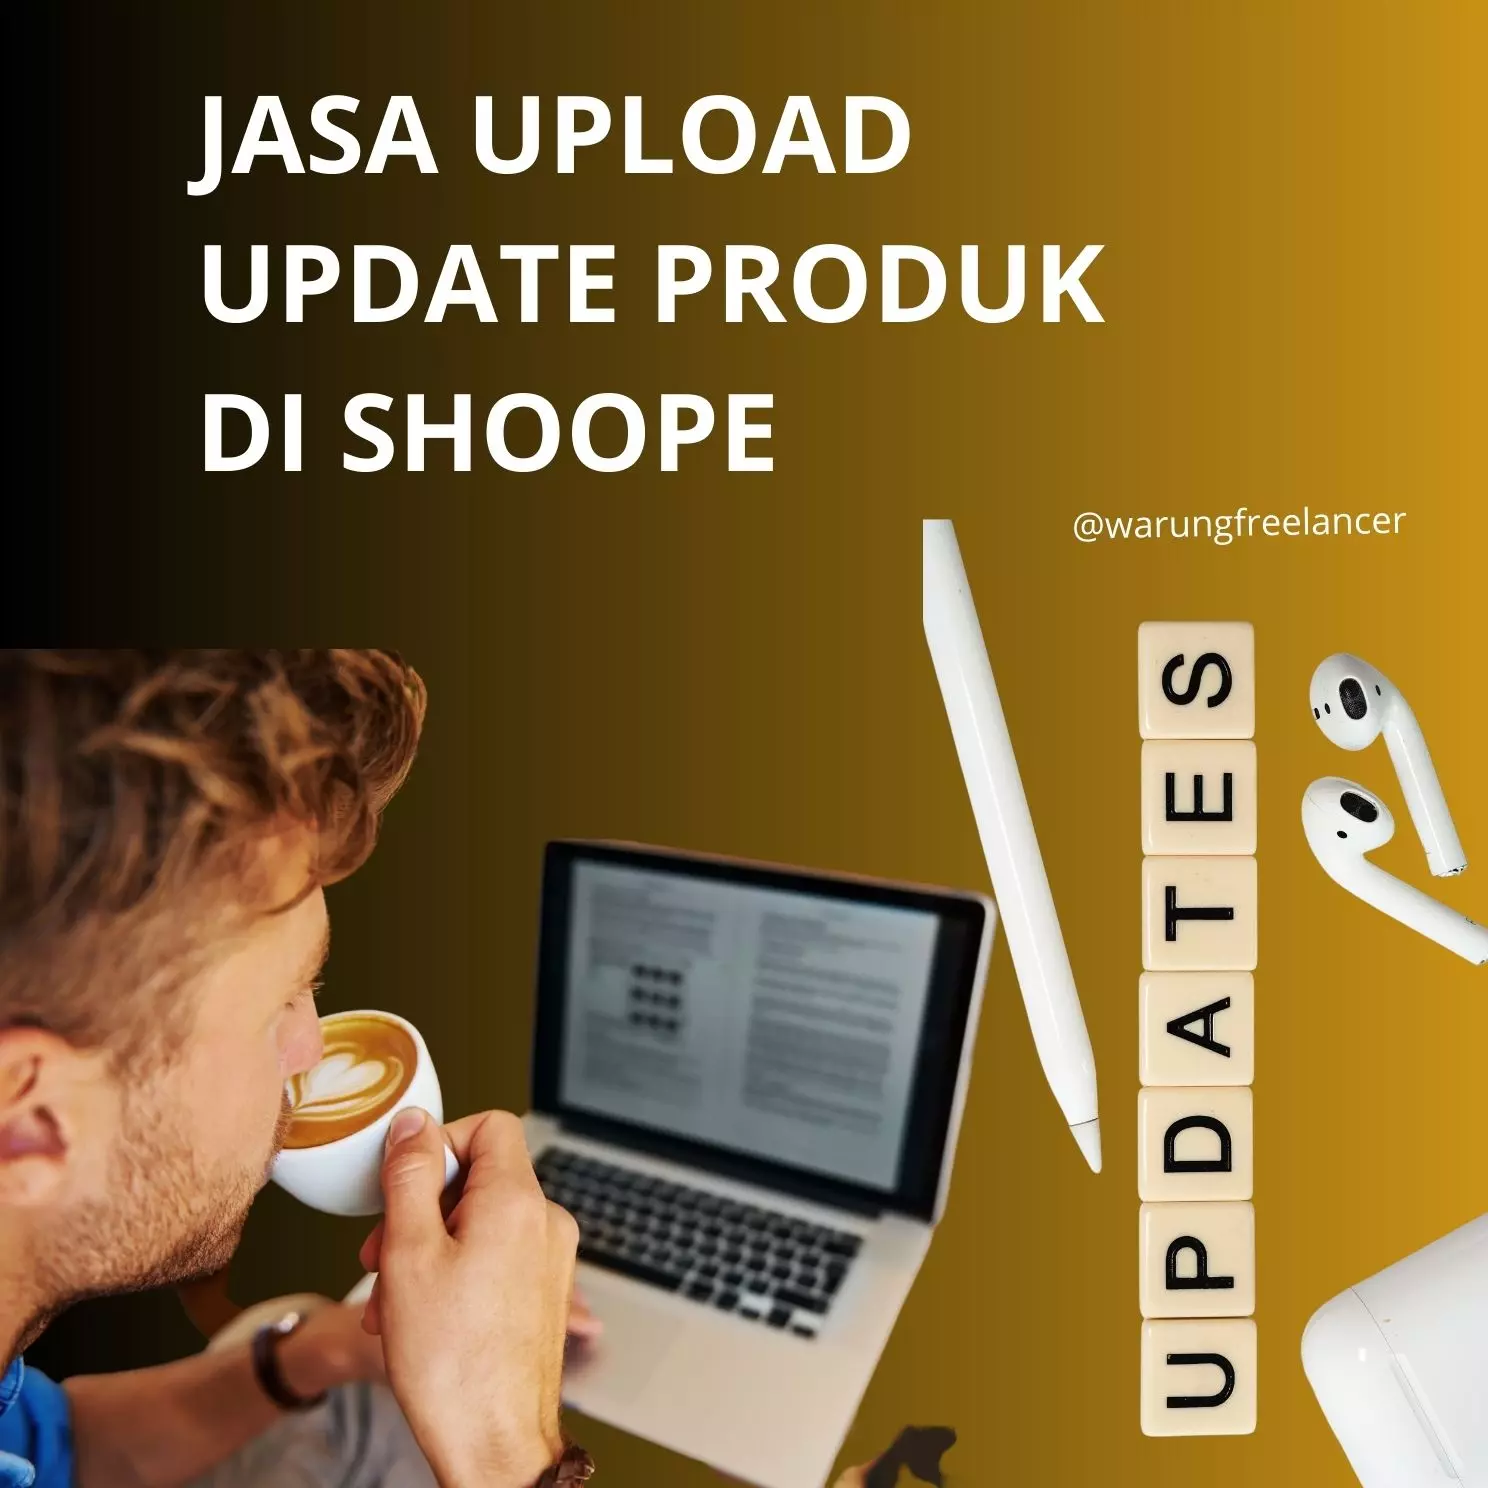 Jasa Upload / Update Produk di Shopee